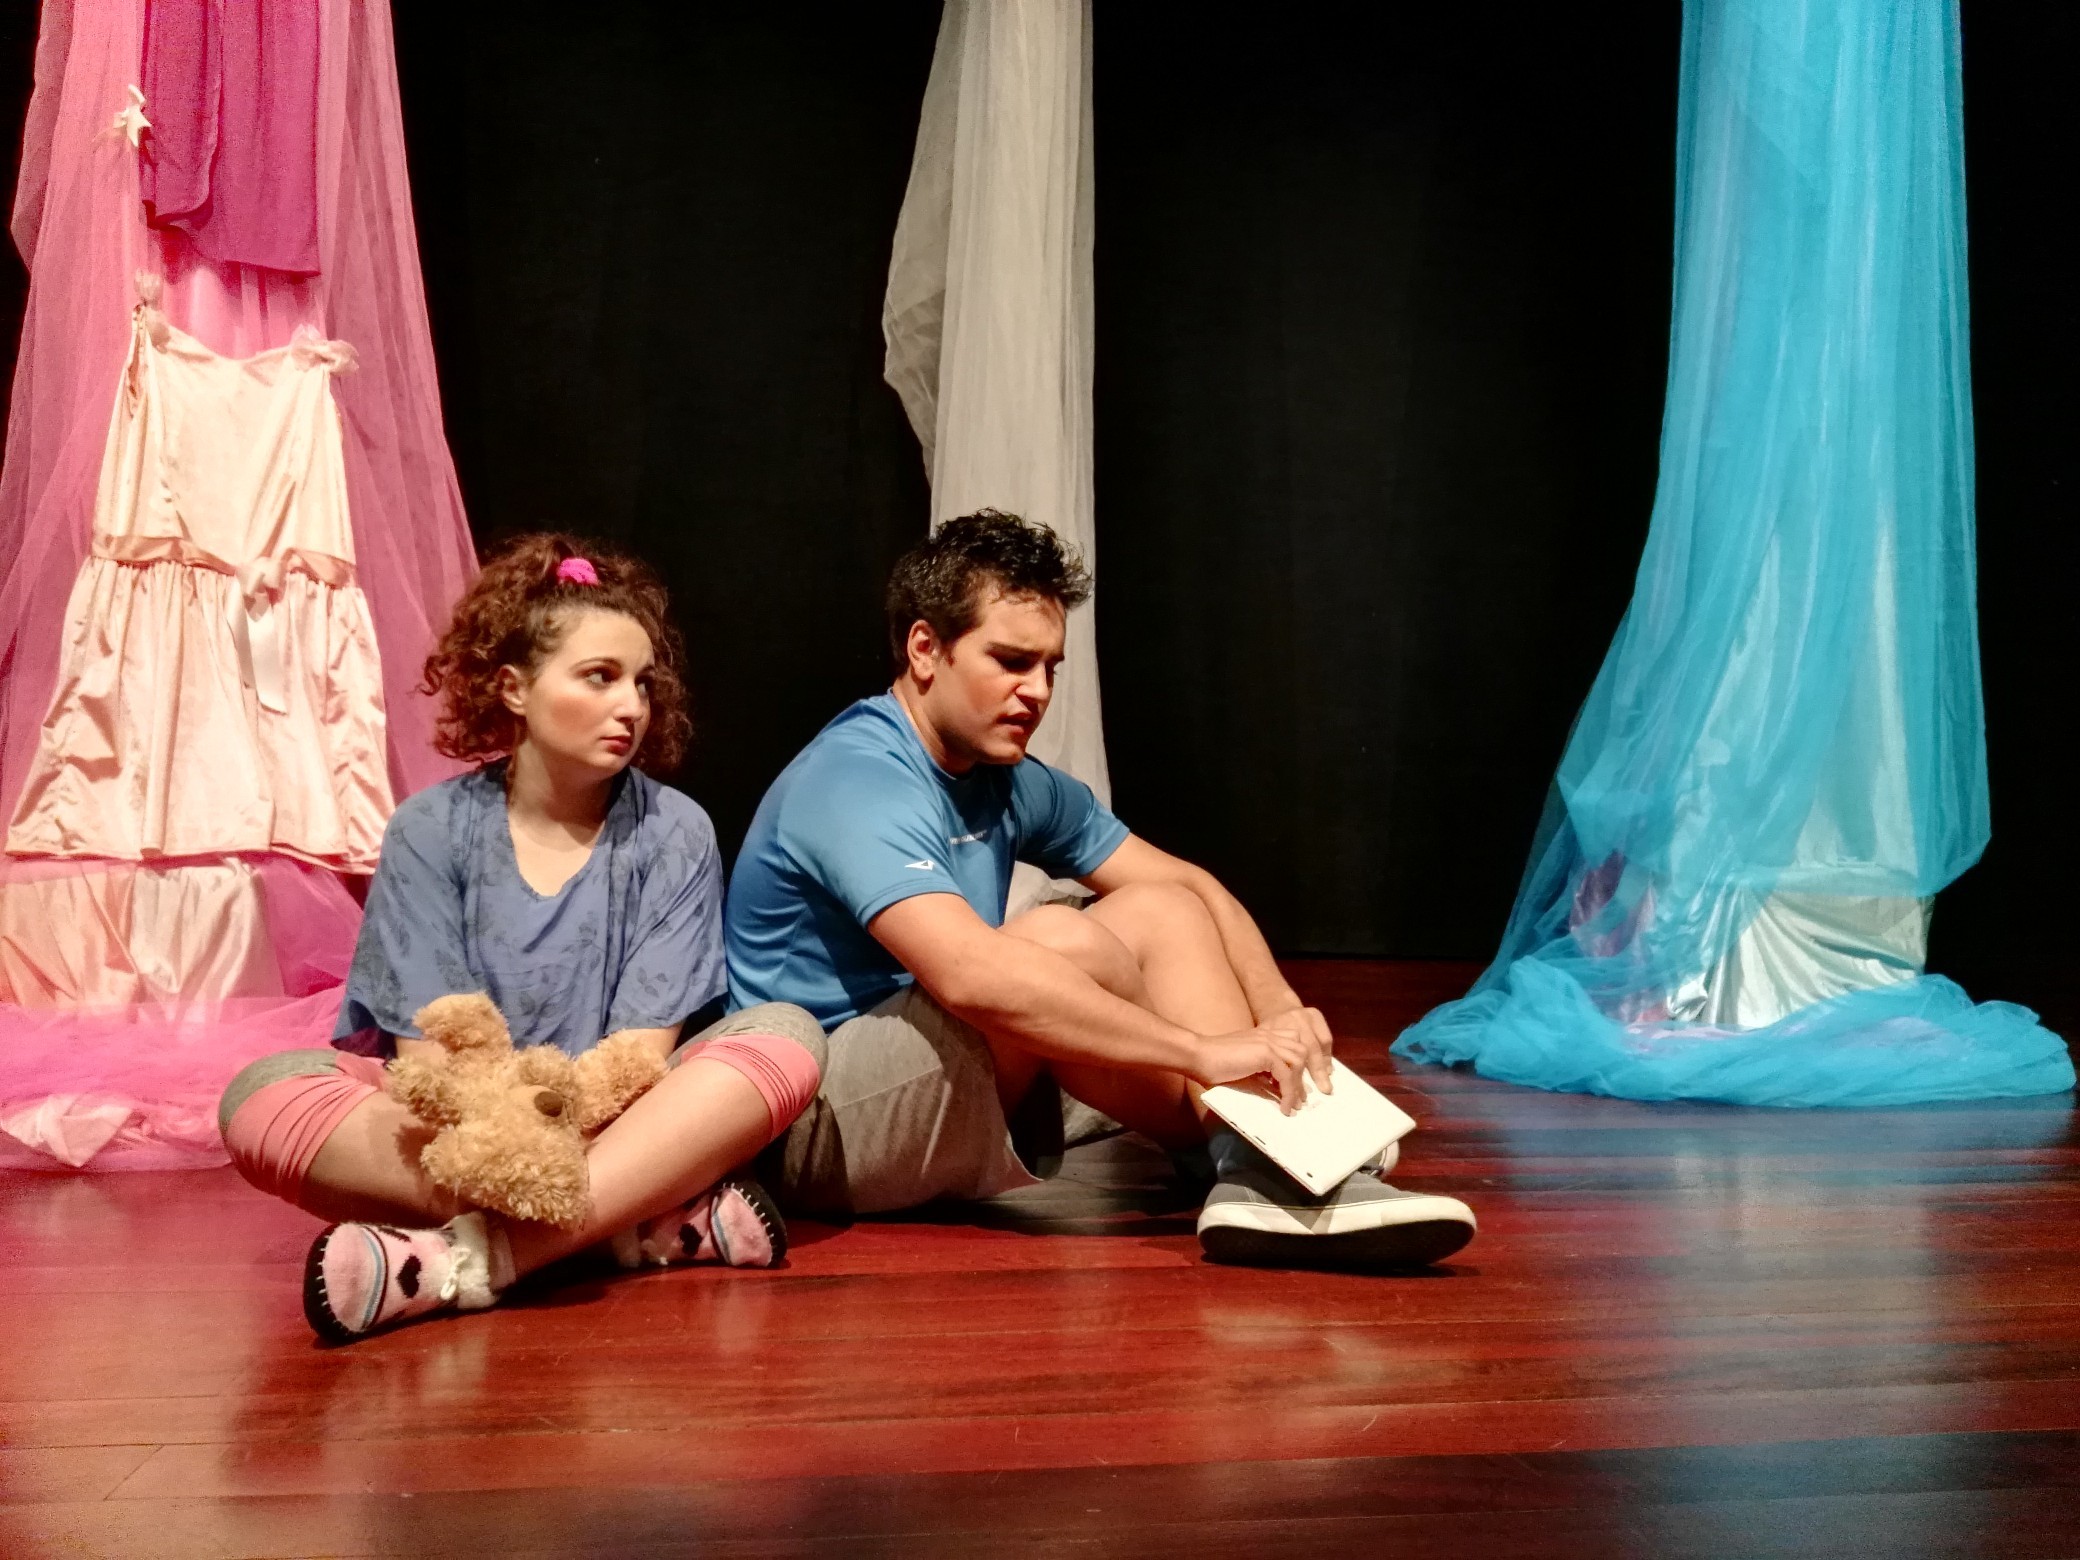 “Vanessa vai à Luta!”: Igualdade de género em peça teatral no Pinhal Novo